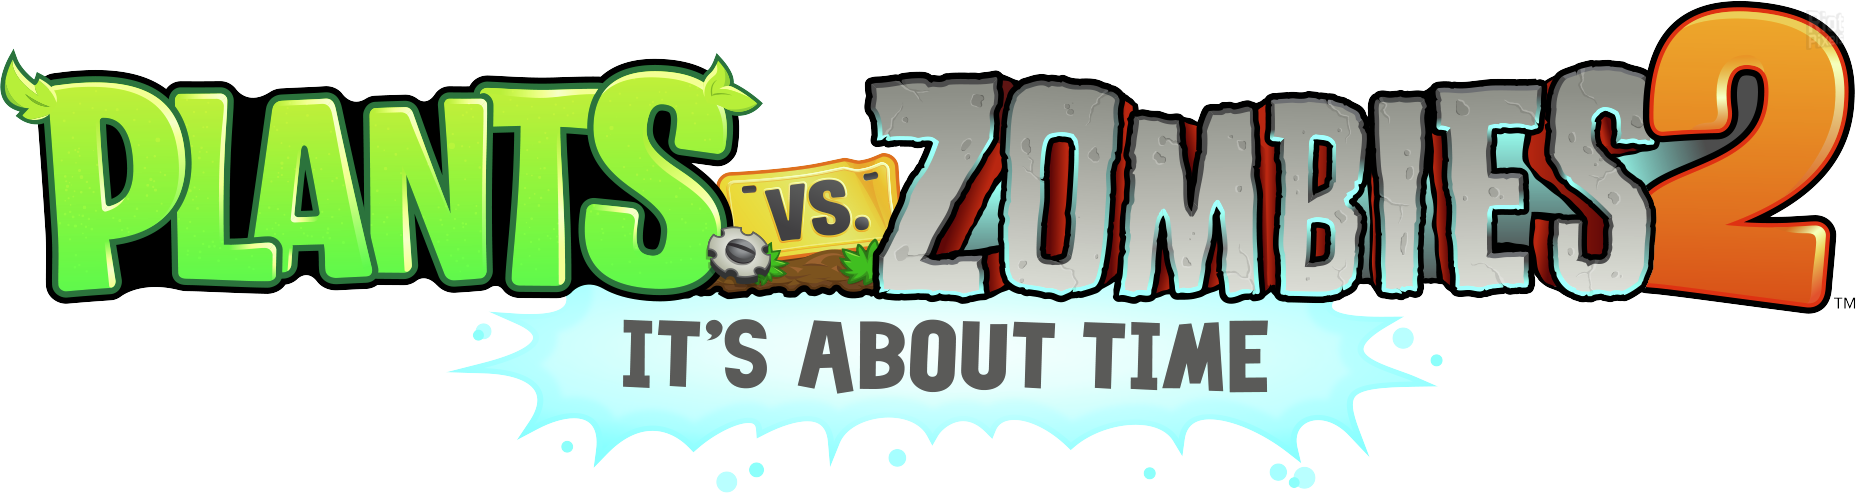 Plants vs. Zombies 2: It's About Time - Desciclopédia